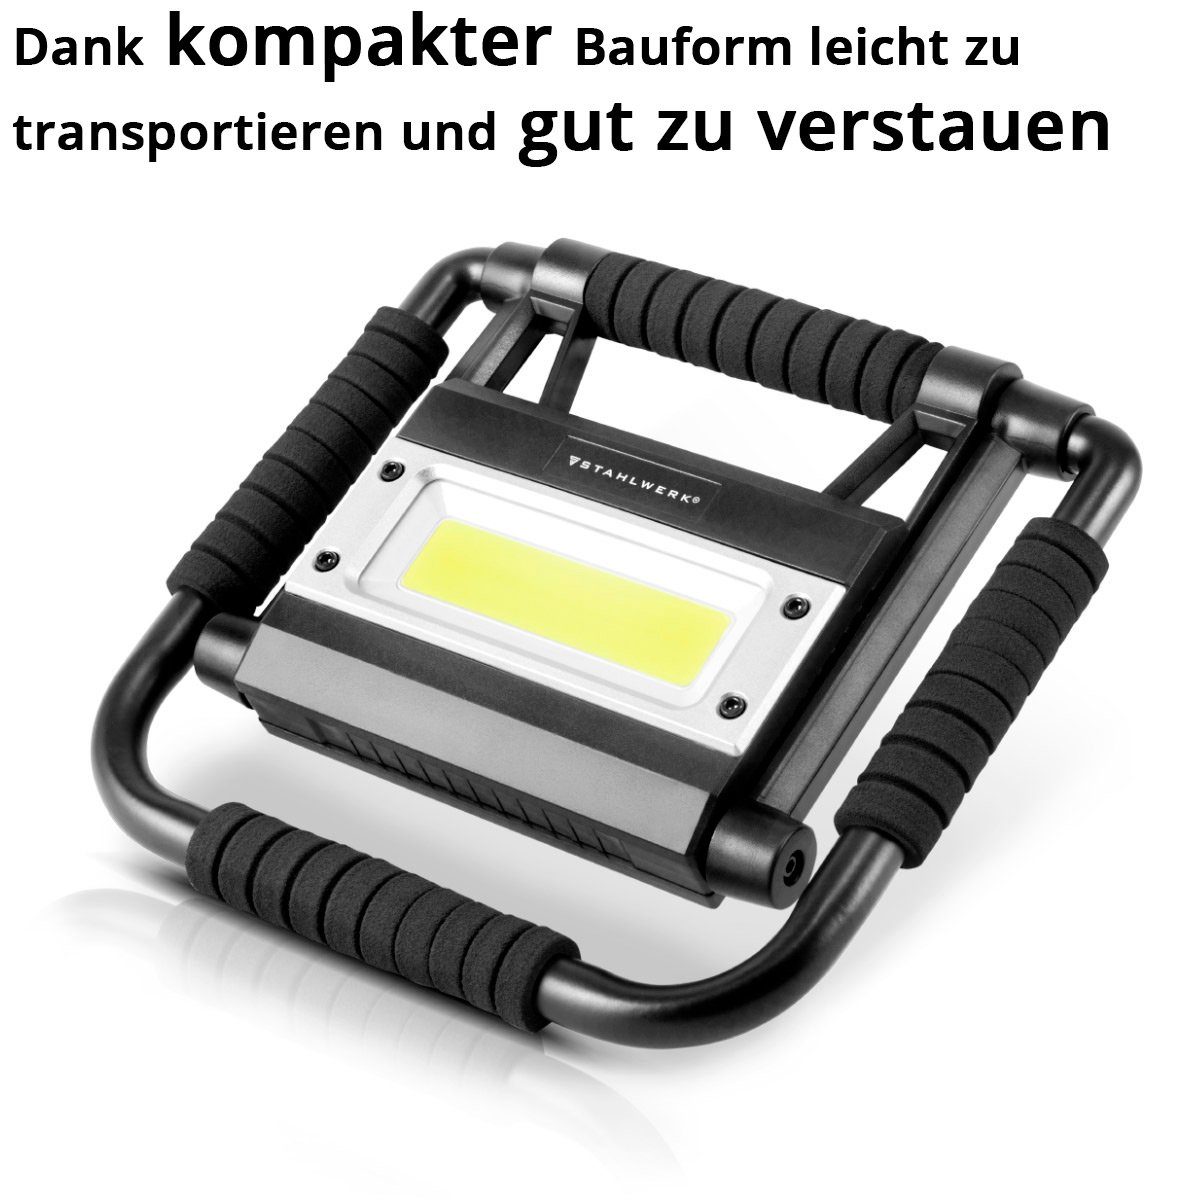 integriert Watt, Baustrahler LED STAHLWERK Powerbank, fest 15 Lumen, 1500 LED mit Baustrahler LAL-15 ST